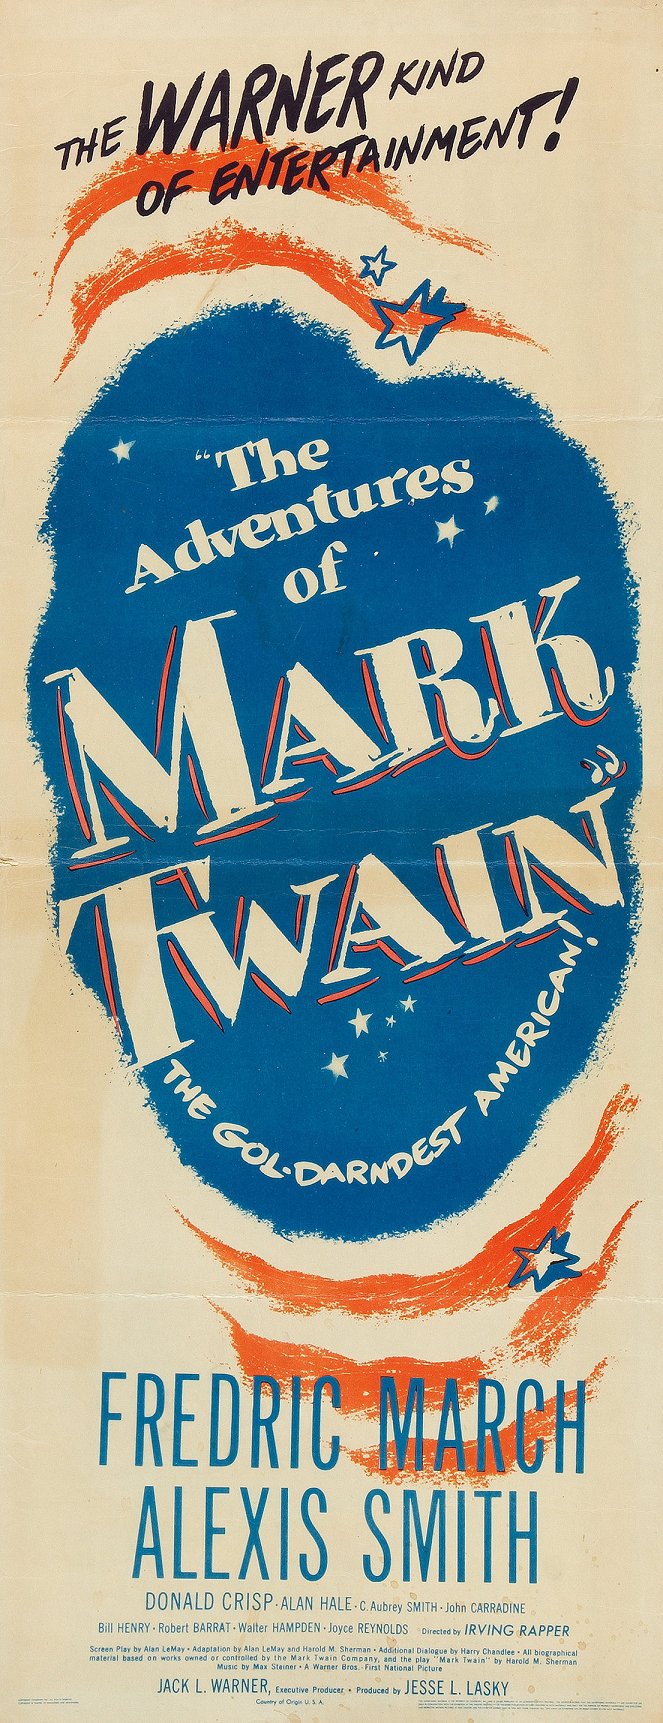 Les Aventures de Mark Twain - Affiches